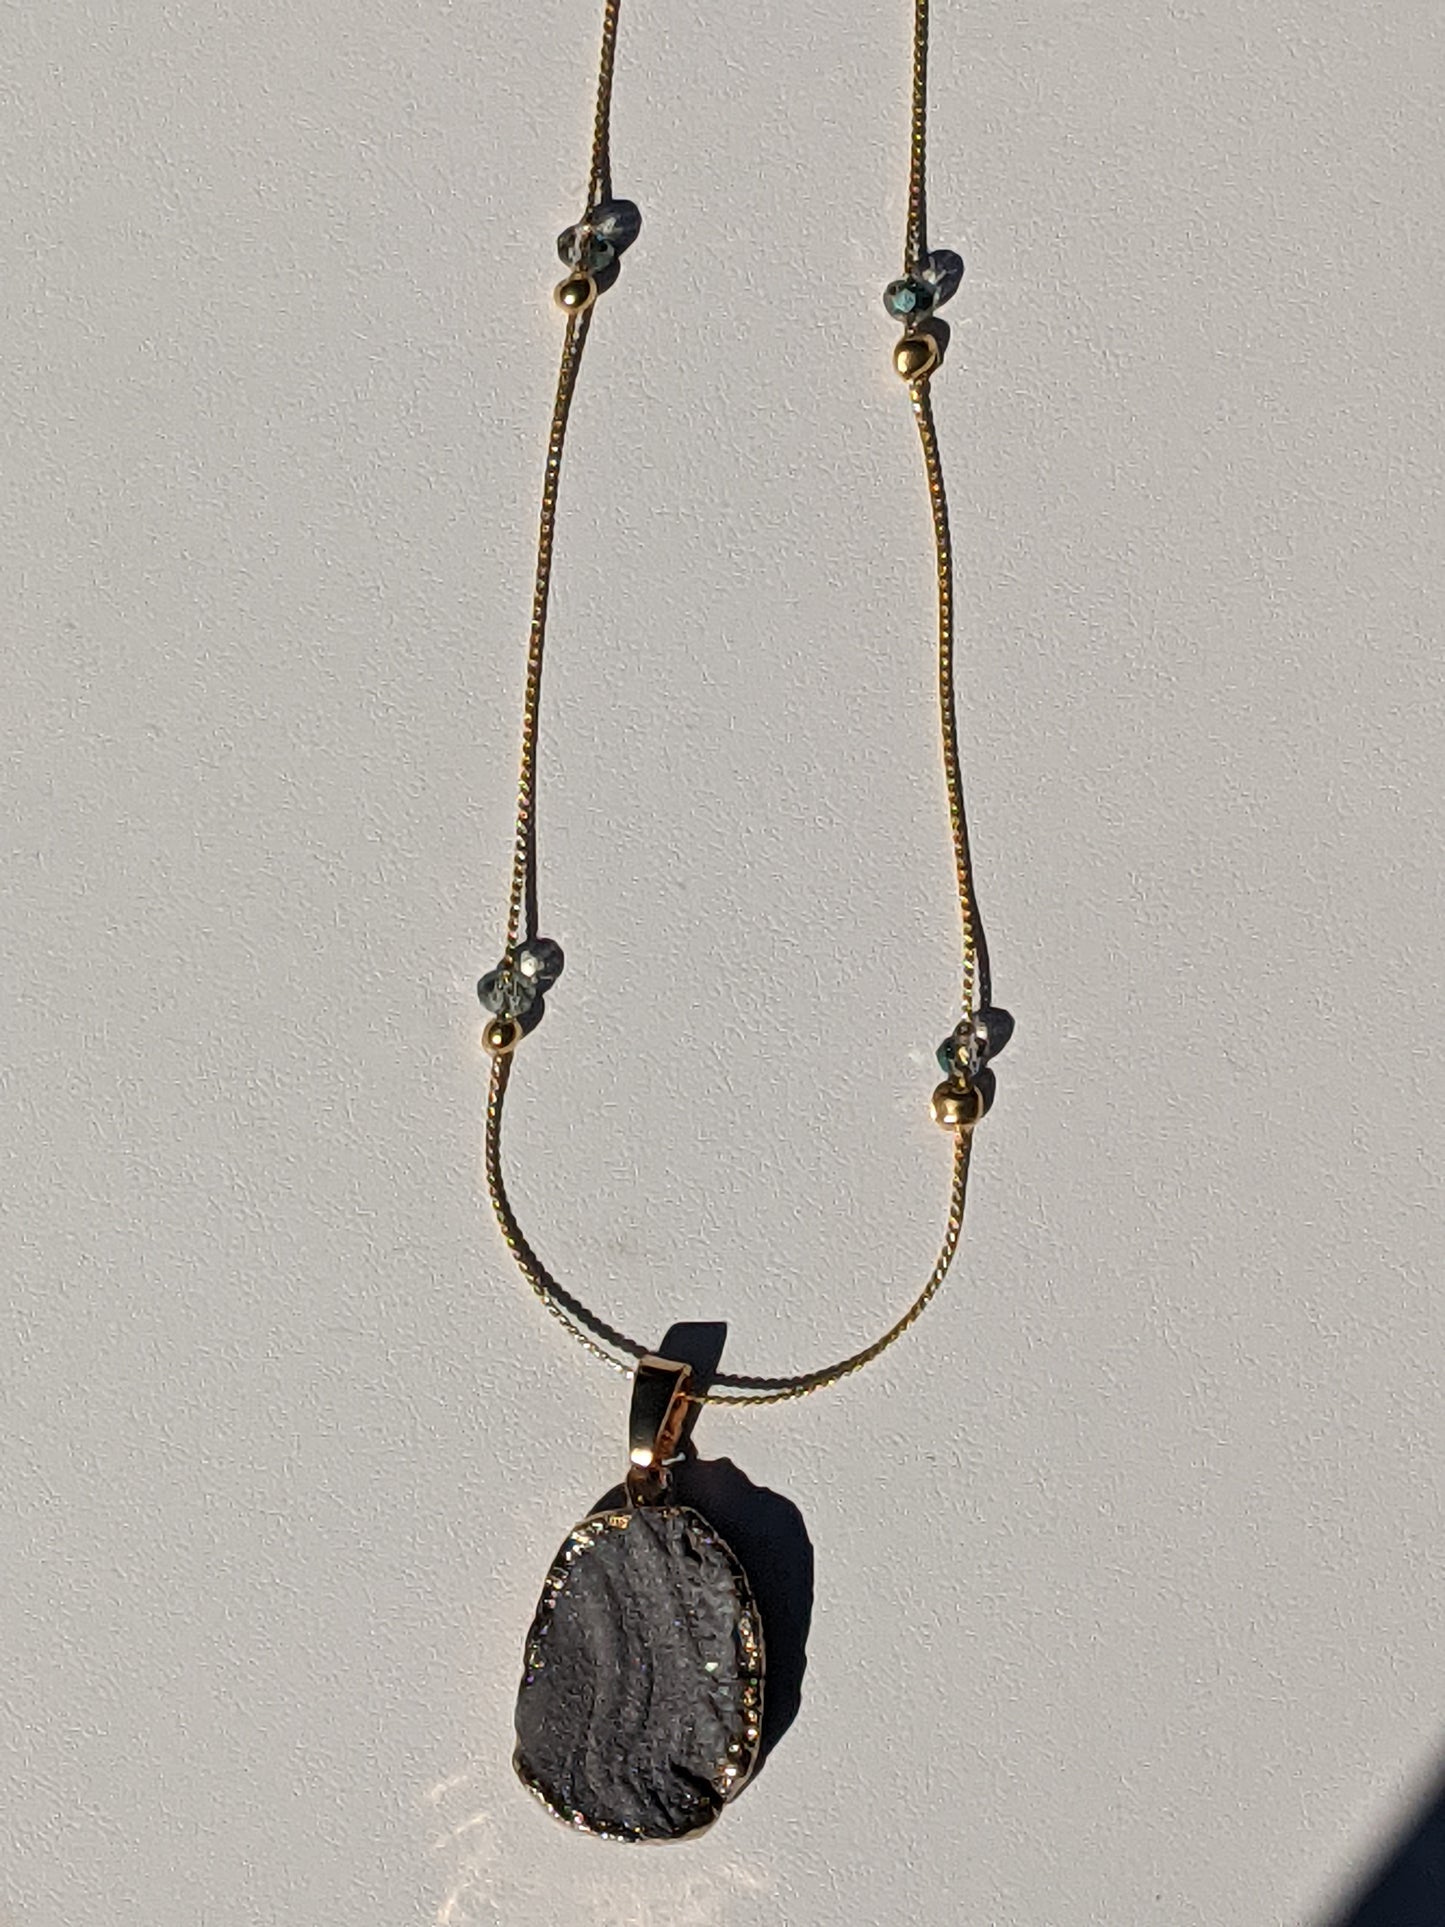 Stardust Druzy Quartz Pendant on Gold-tone Necklace